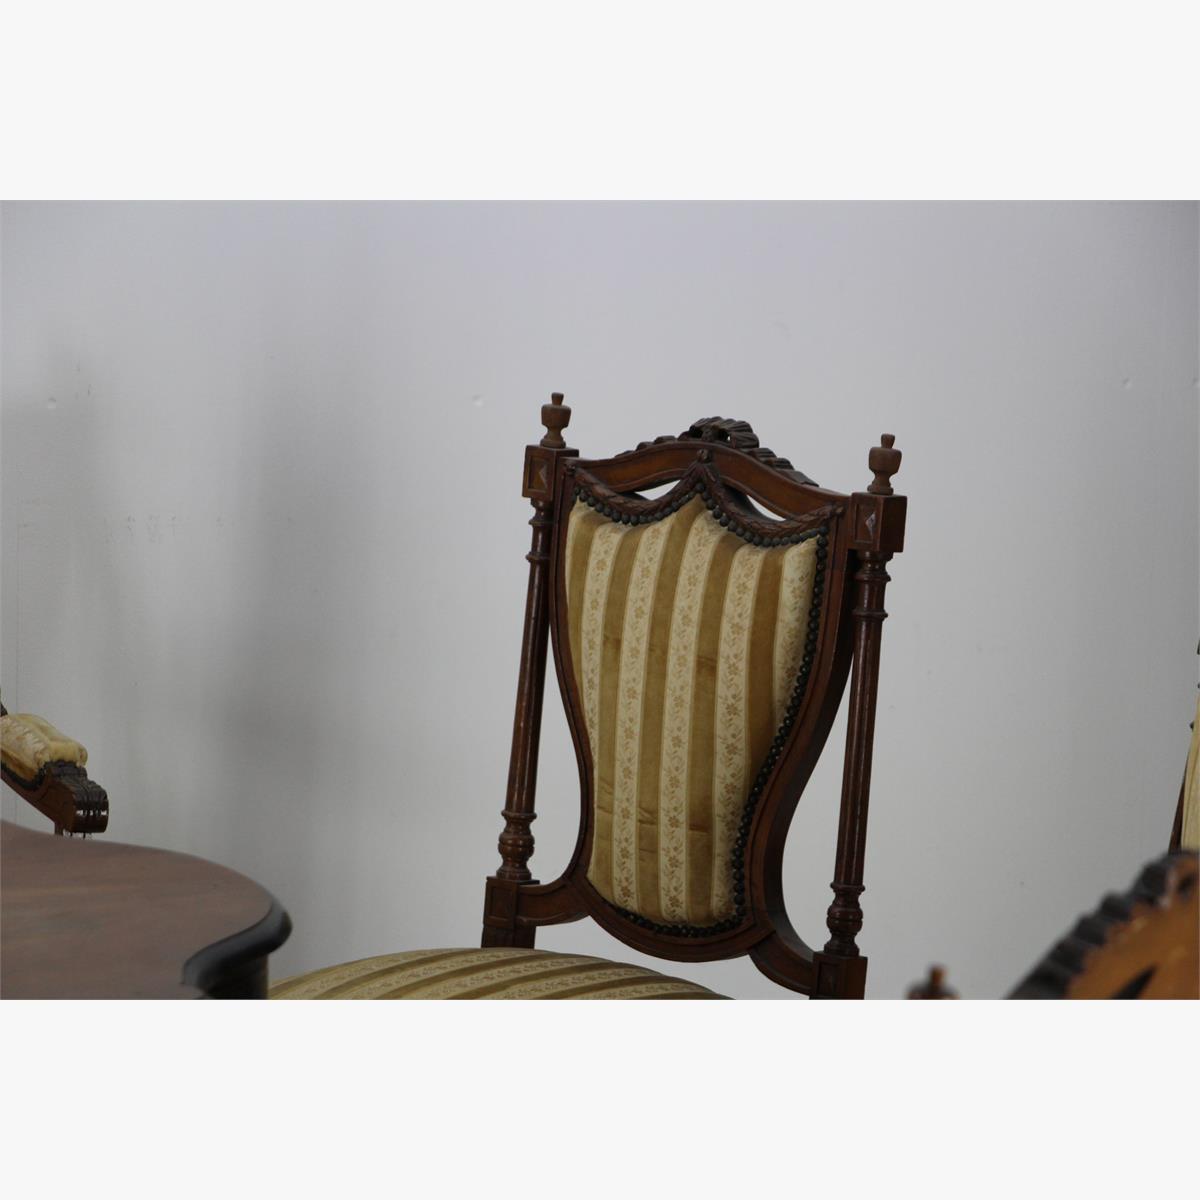 Afbeeldingen van antieke zithoek een zitbank twee armstoelen en vier gewone stoelen 